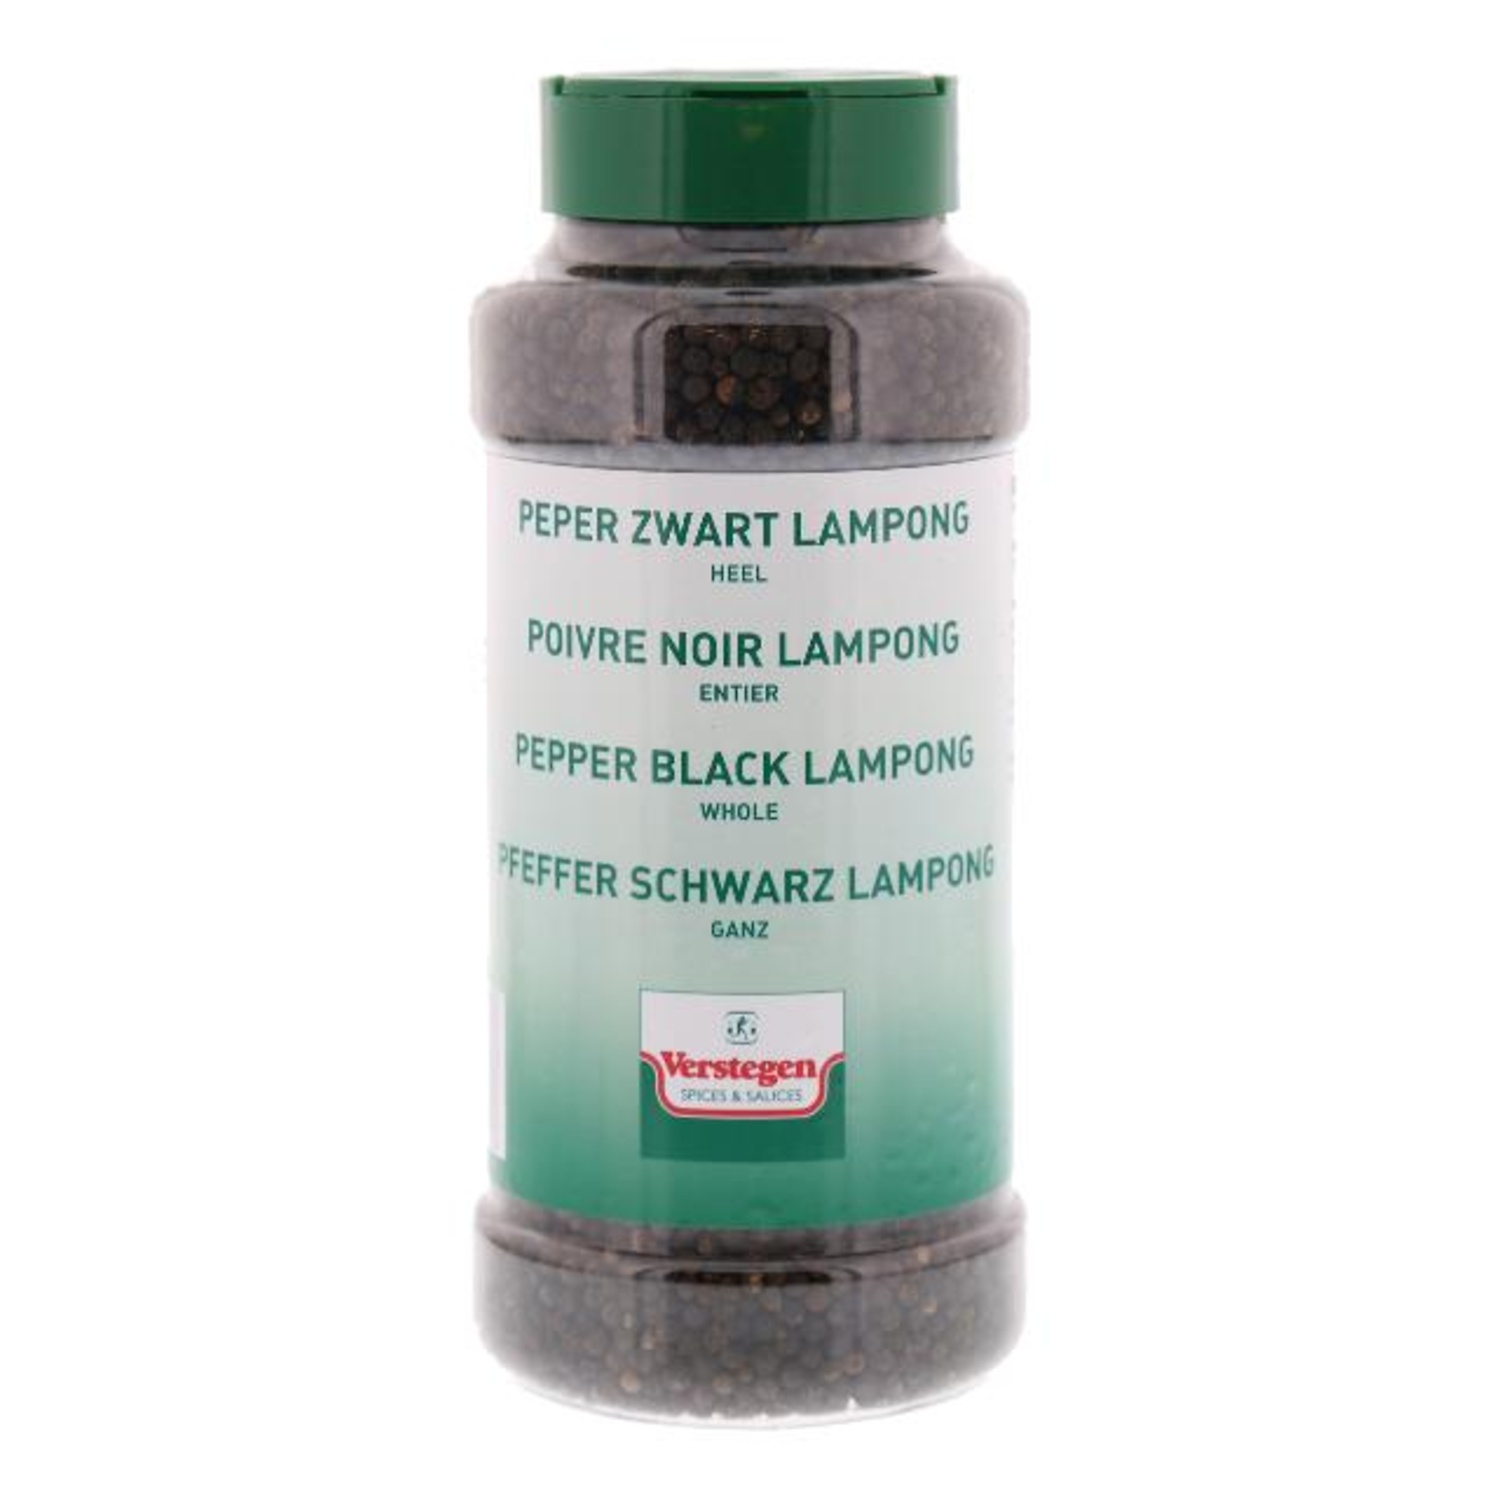 Peper korrels Lampong Verstegen bus  zwart 580 gram